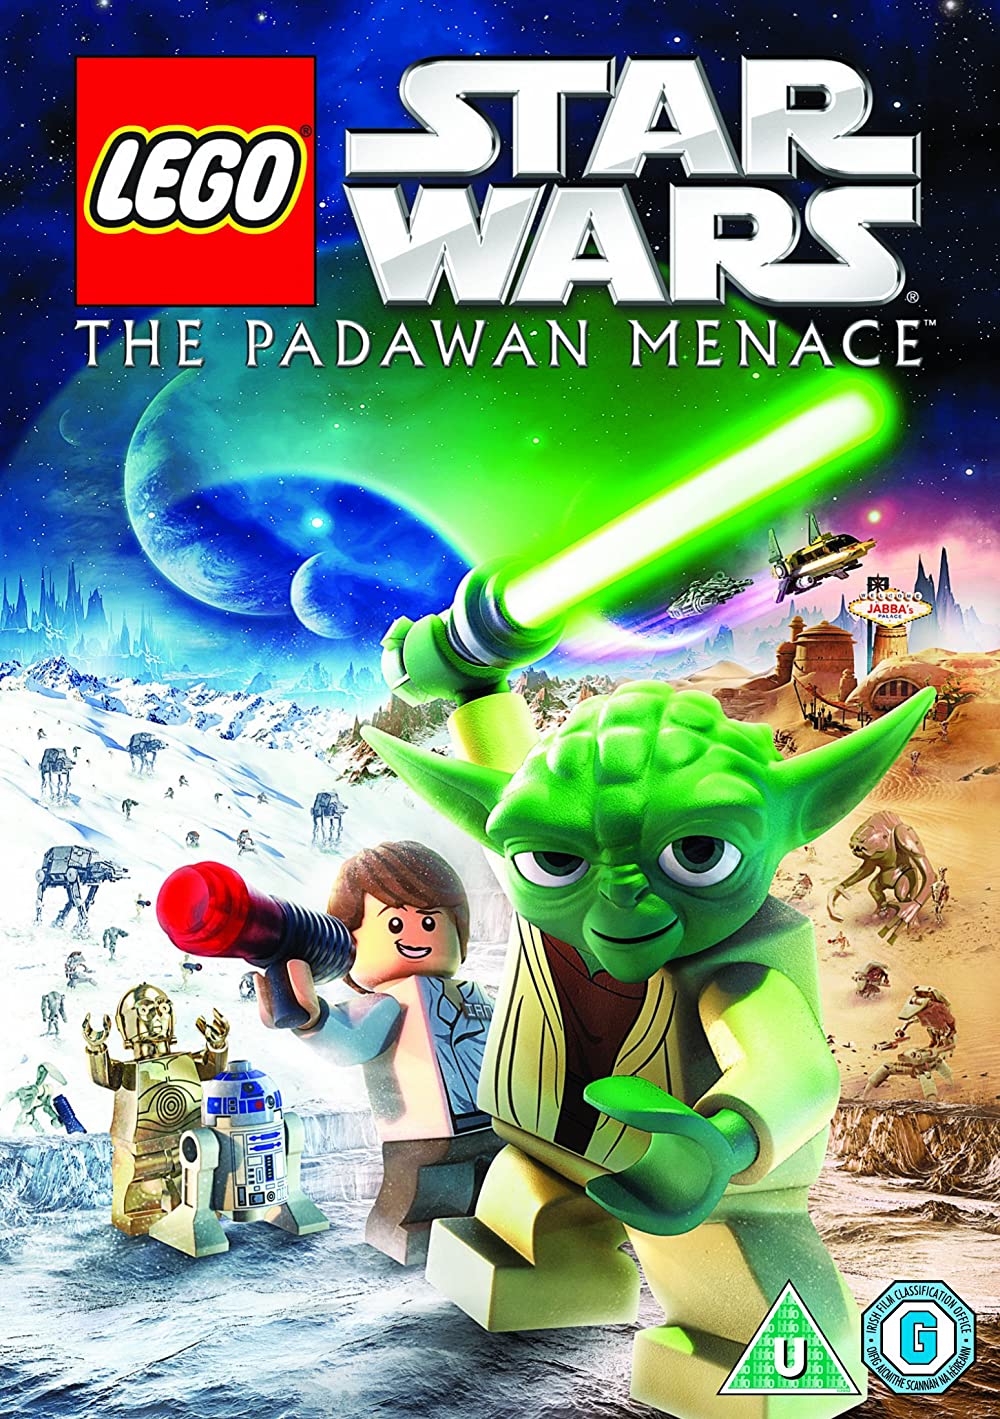 Lego Star Wars: The Padawan Menace Movie Download - Download Lego Star Wars: The Padawan Menace Full Movie